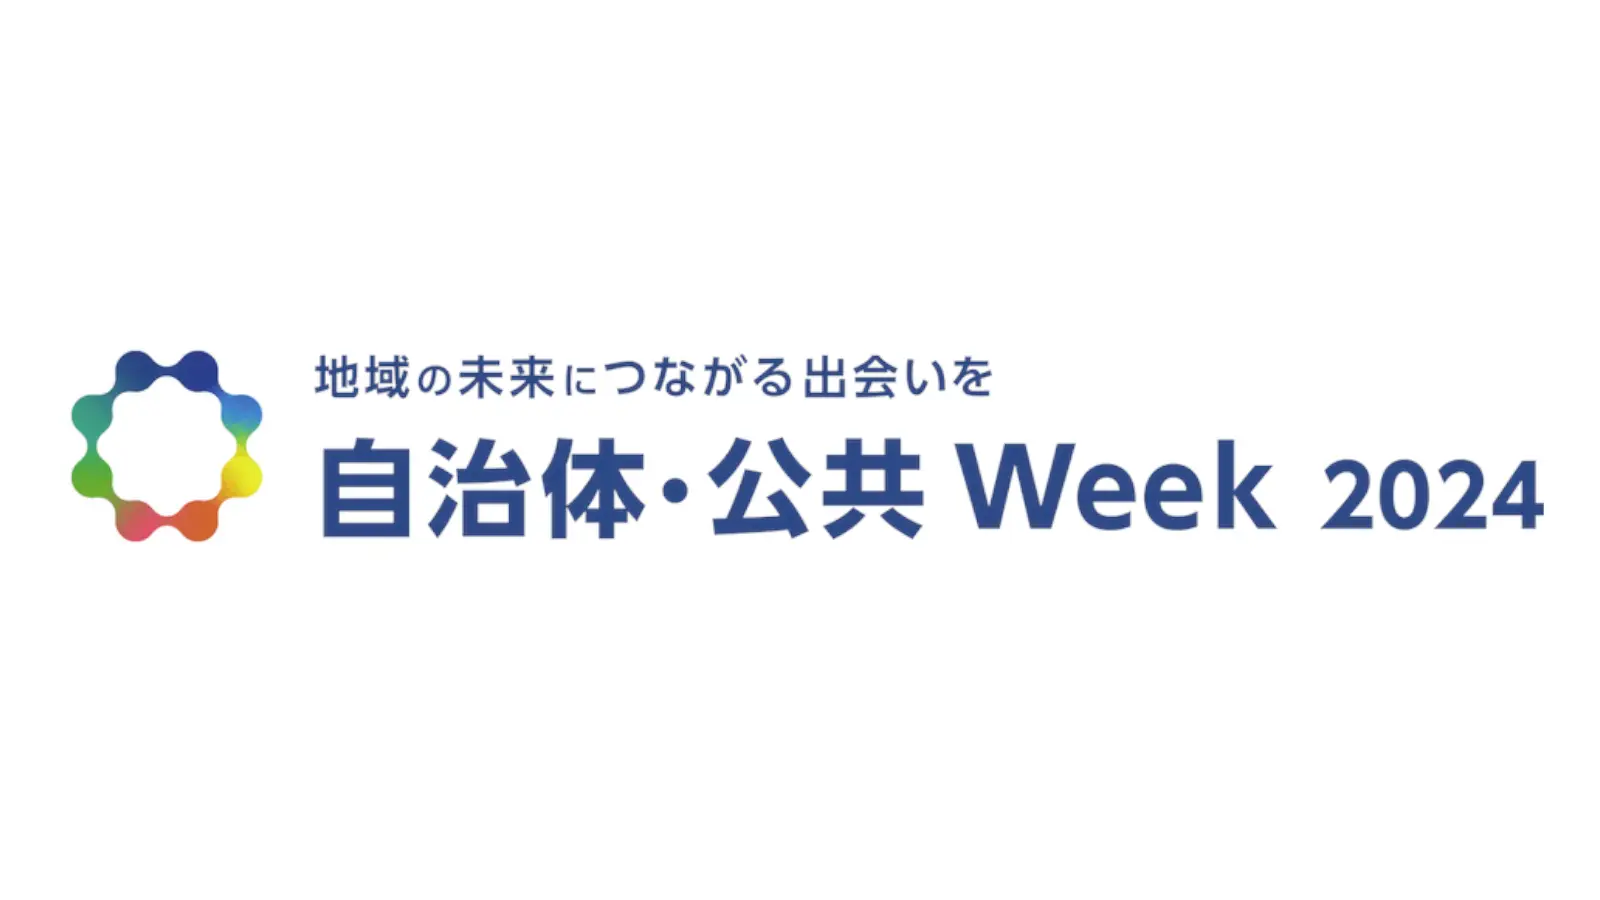 東京ビッグサイトにて開催される「自治体・公共 Week 2024」に出展します